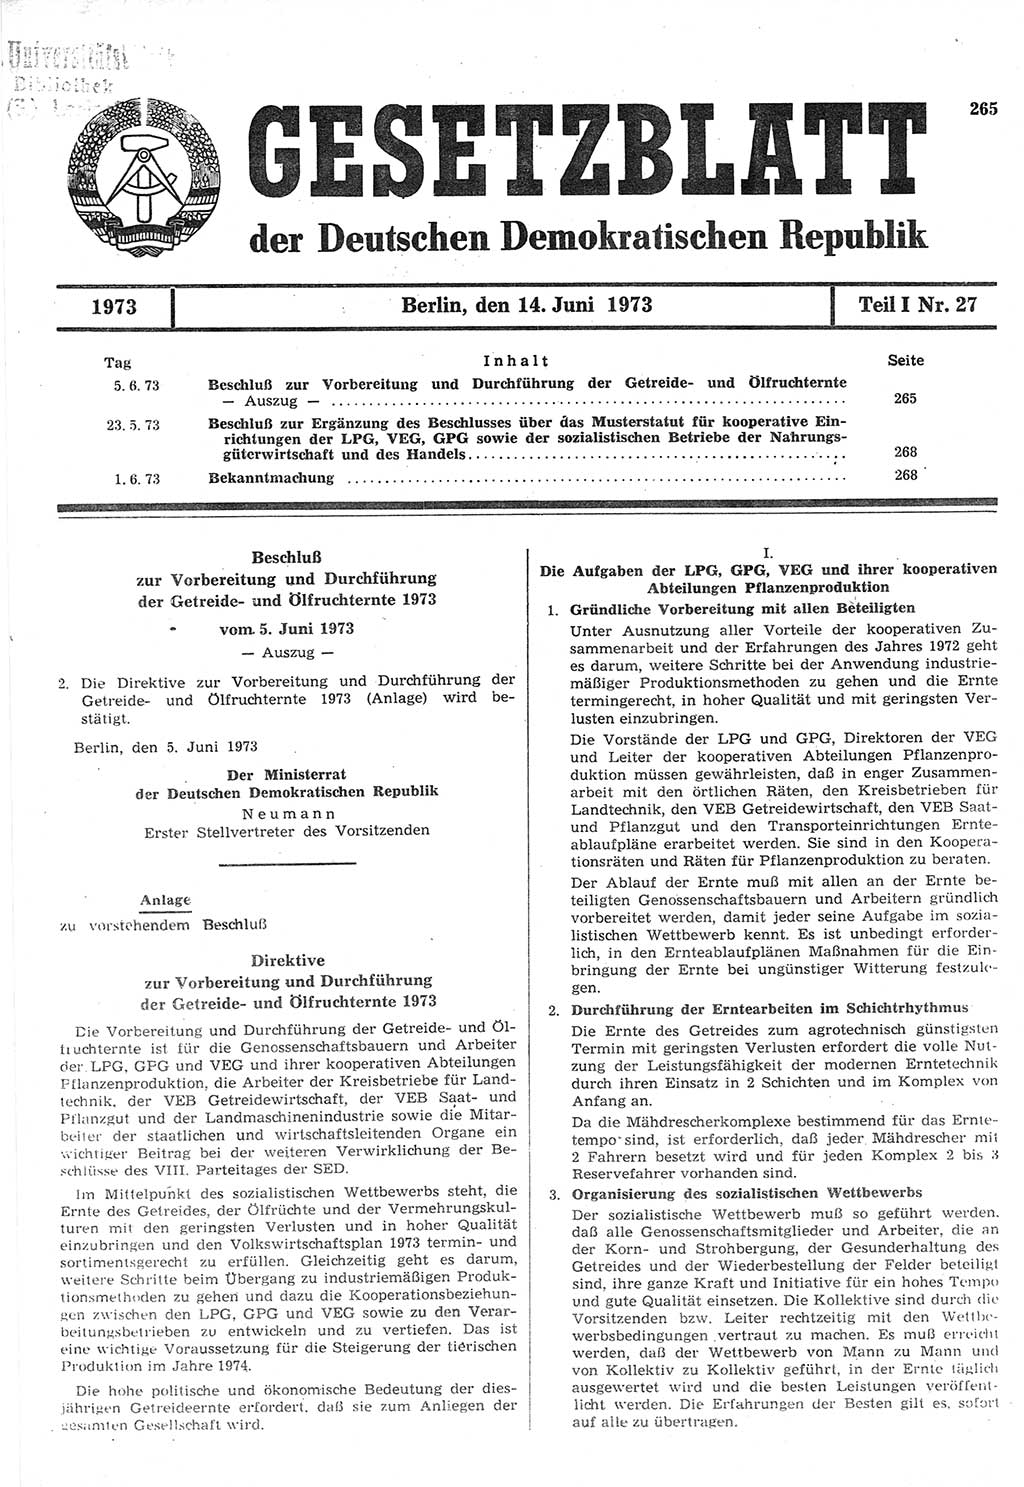 Gesetzblatt (GBl.) der Deutschen Demokratischen Republik (DDR) Teil Ⅰ 1973, Seite 265 (GBl. DDR Ⅰ 1973, S. 265)